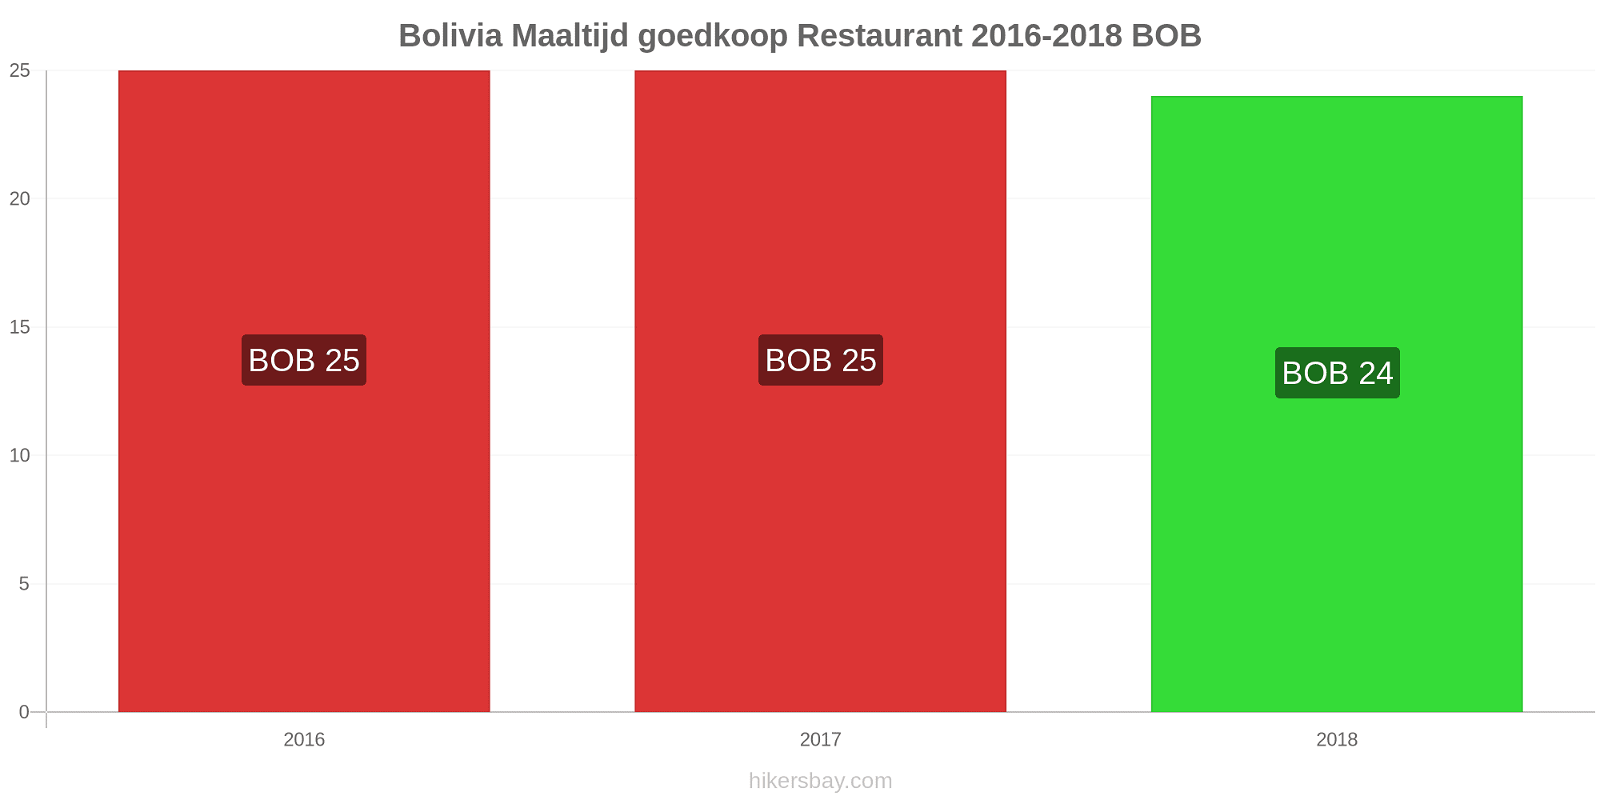 Bolivia prijswijzigingen Maaltijd in een goedkoop restaurant hikersbay.com